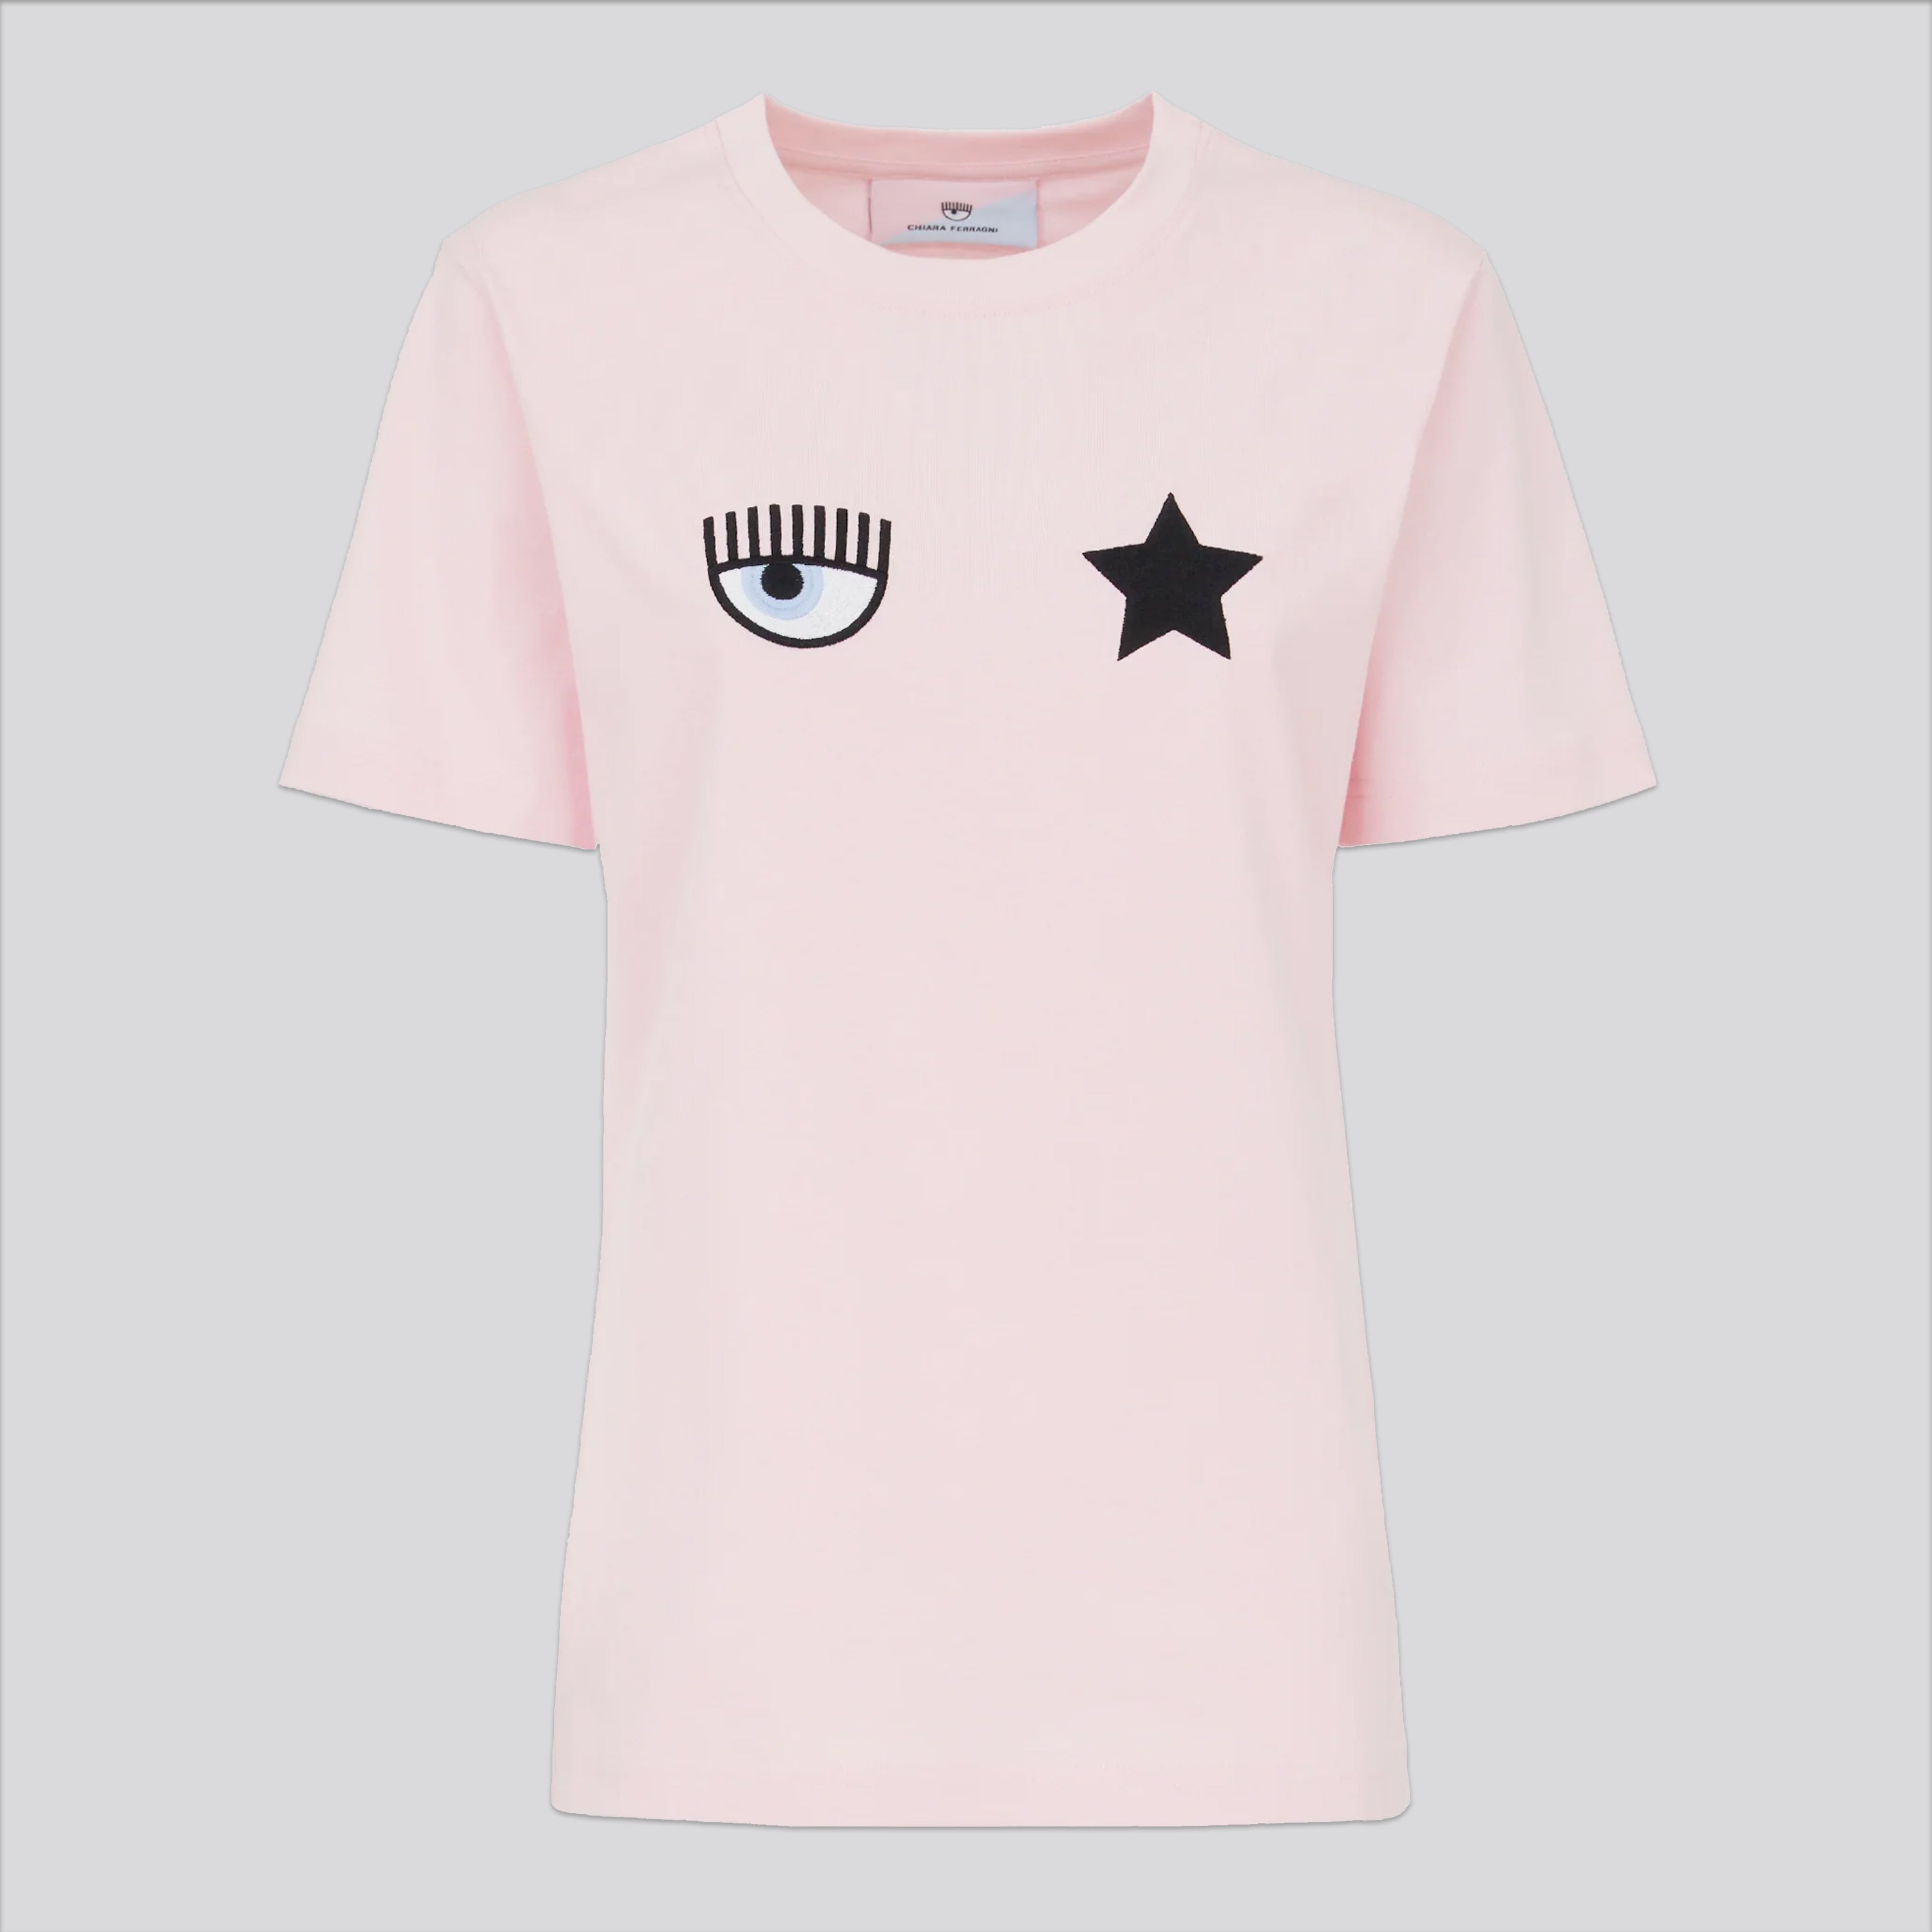 Camiseta Rosado Chiara Ferragni 600 Eye Star